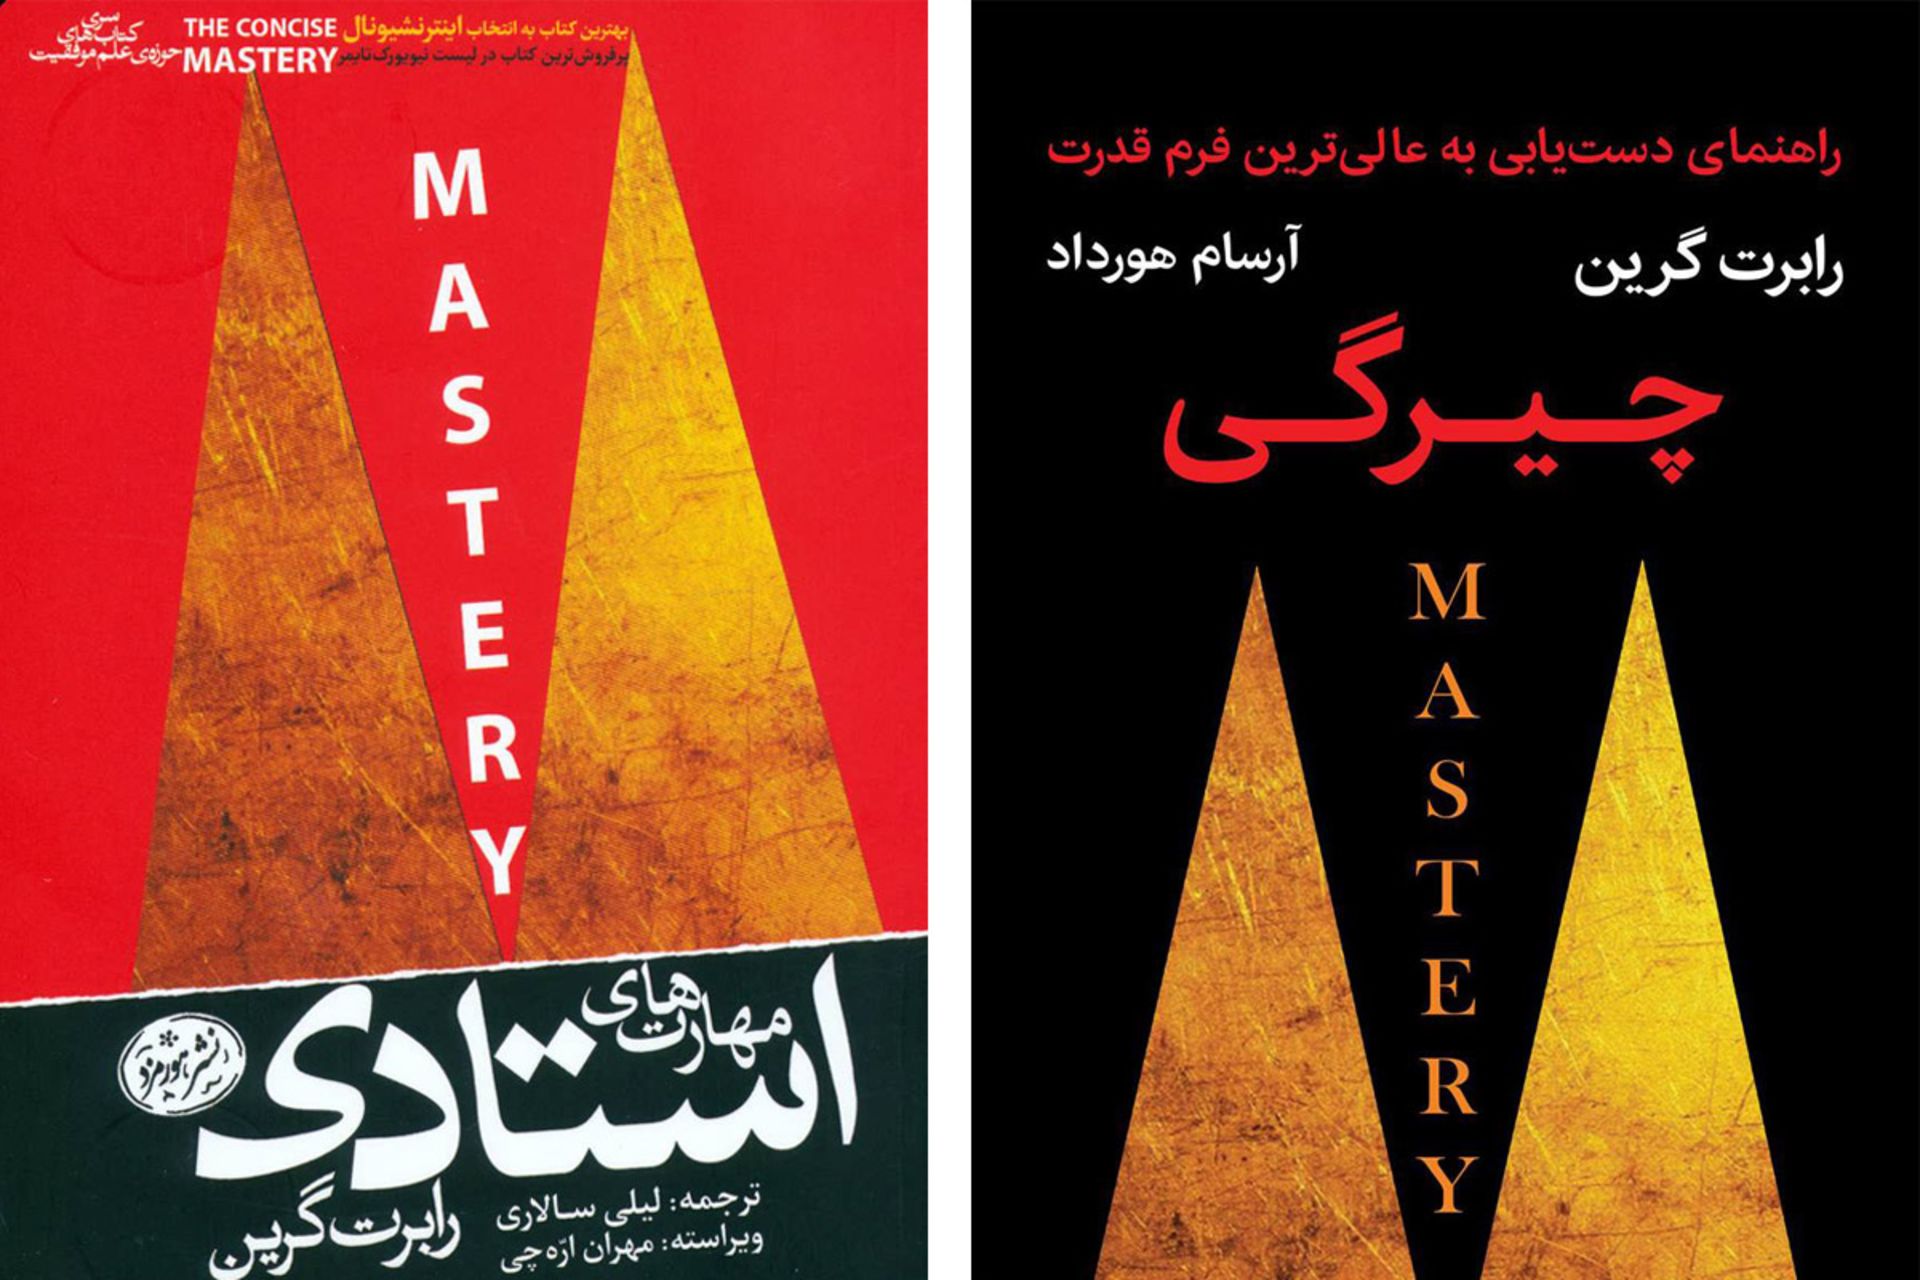 مرجع متخصصين ايران معرفي جزوه رايگان چيرگي/ mastery book